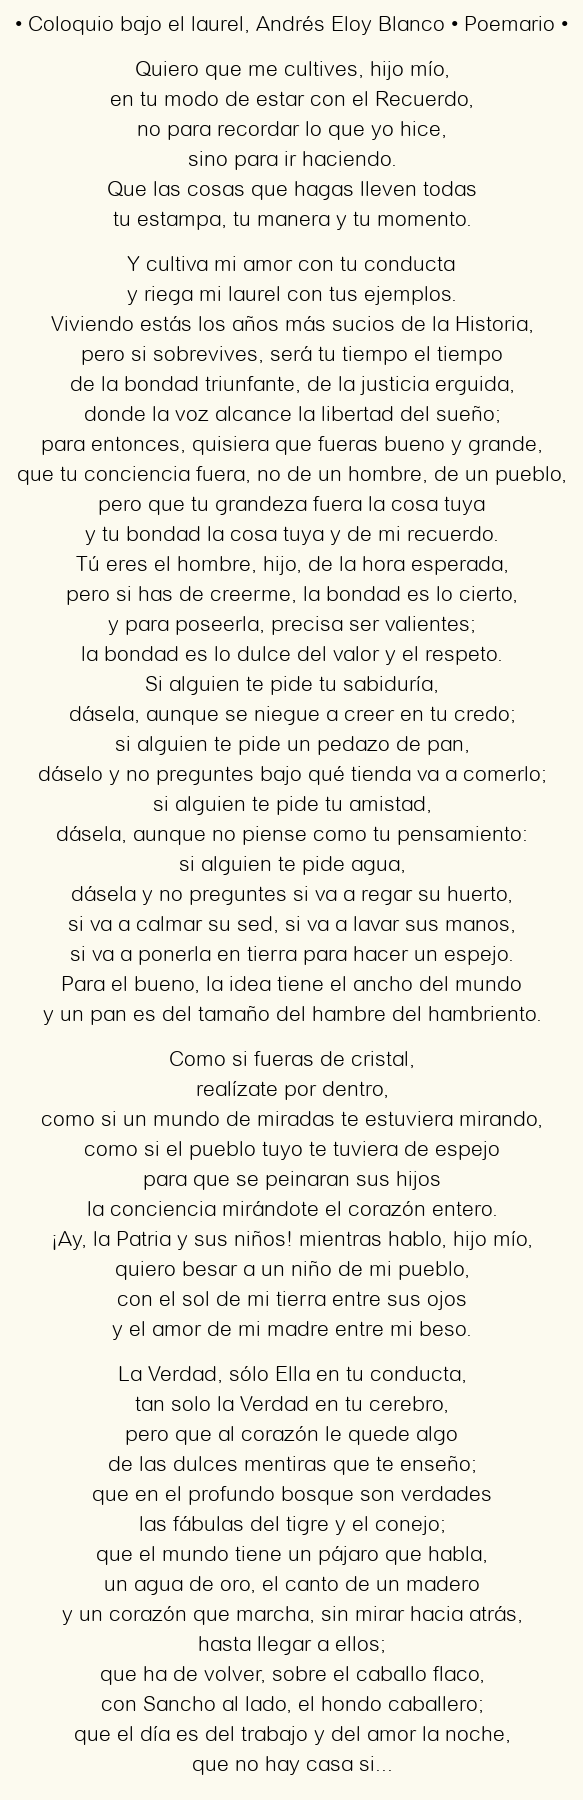 Imagen con el poema Coloquio bajo el laurel, por Andrés Eloy Blanco